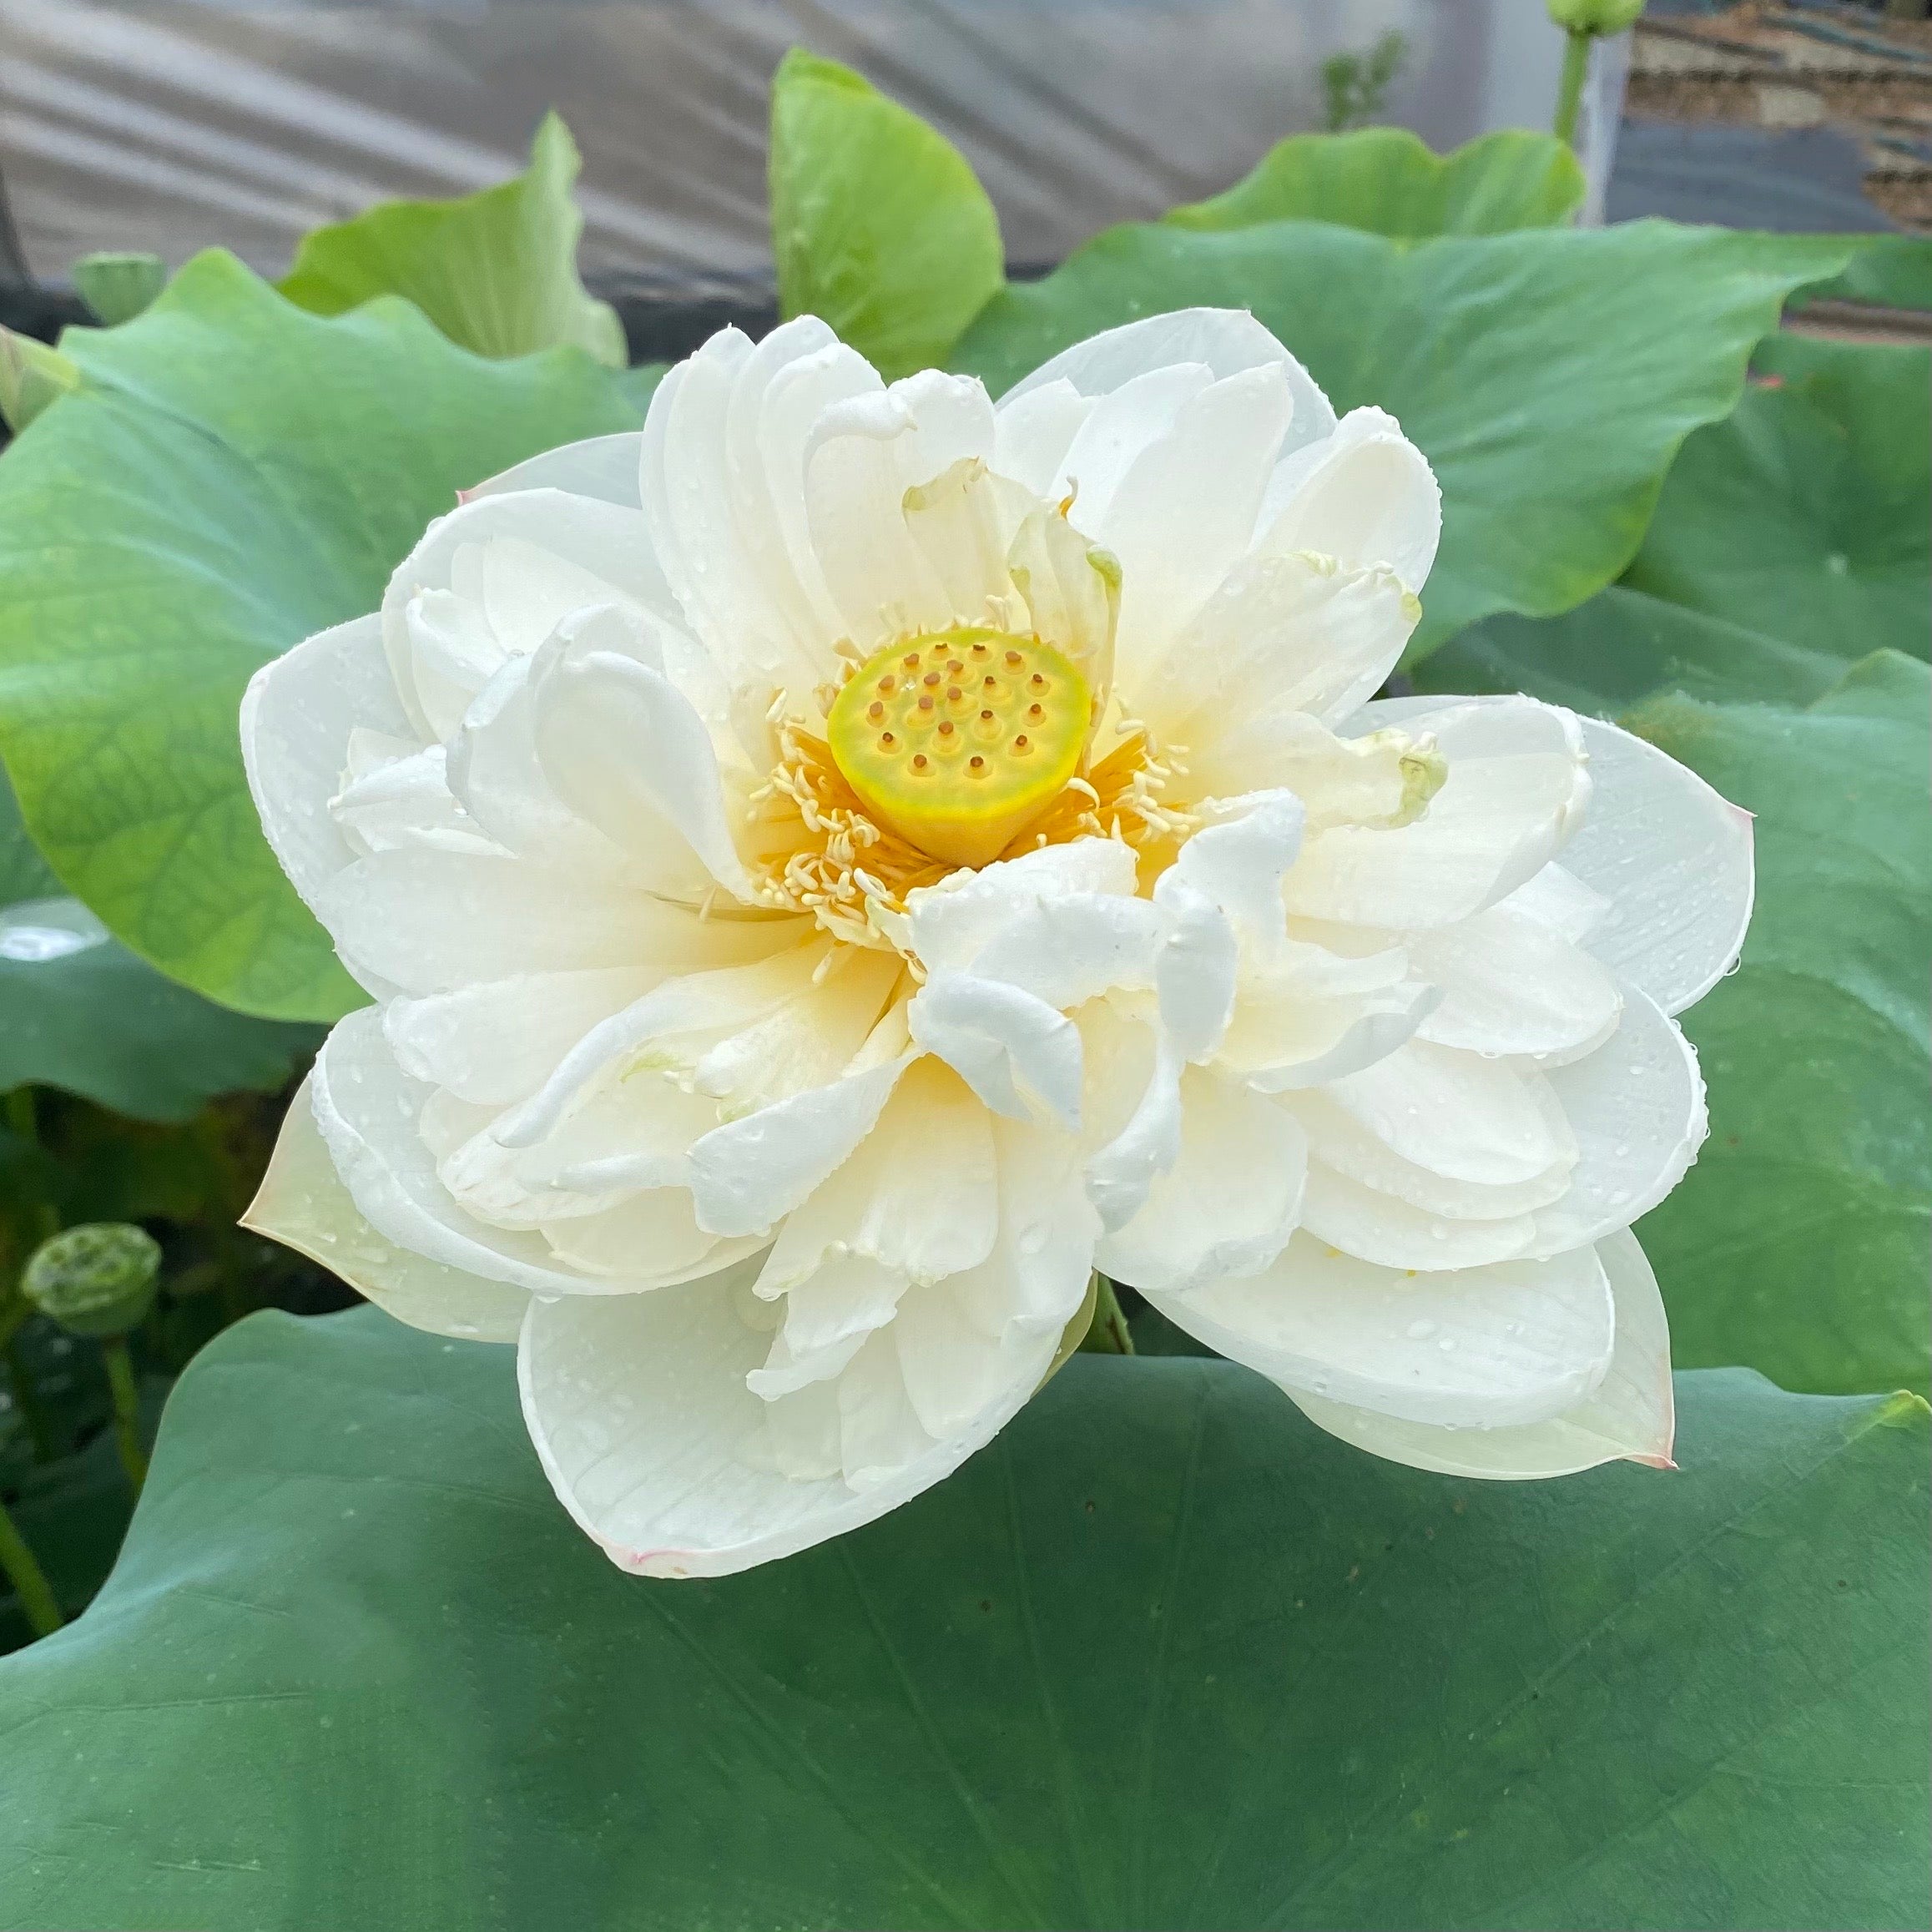 Snow White Lotus Pure White Blooms!